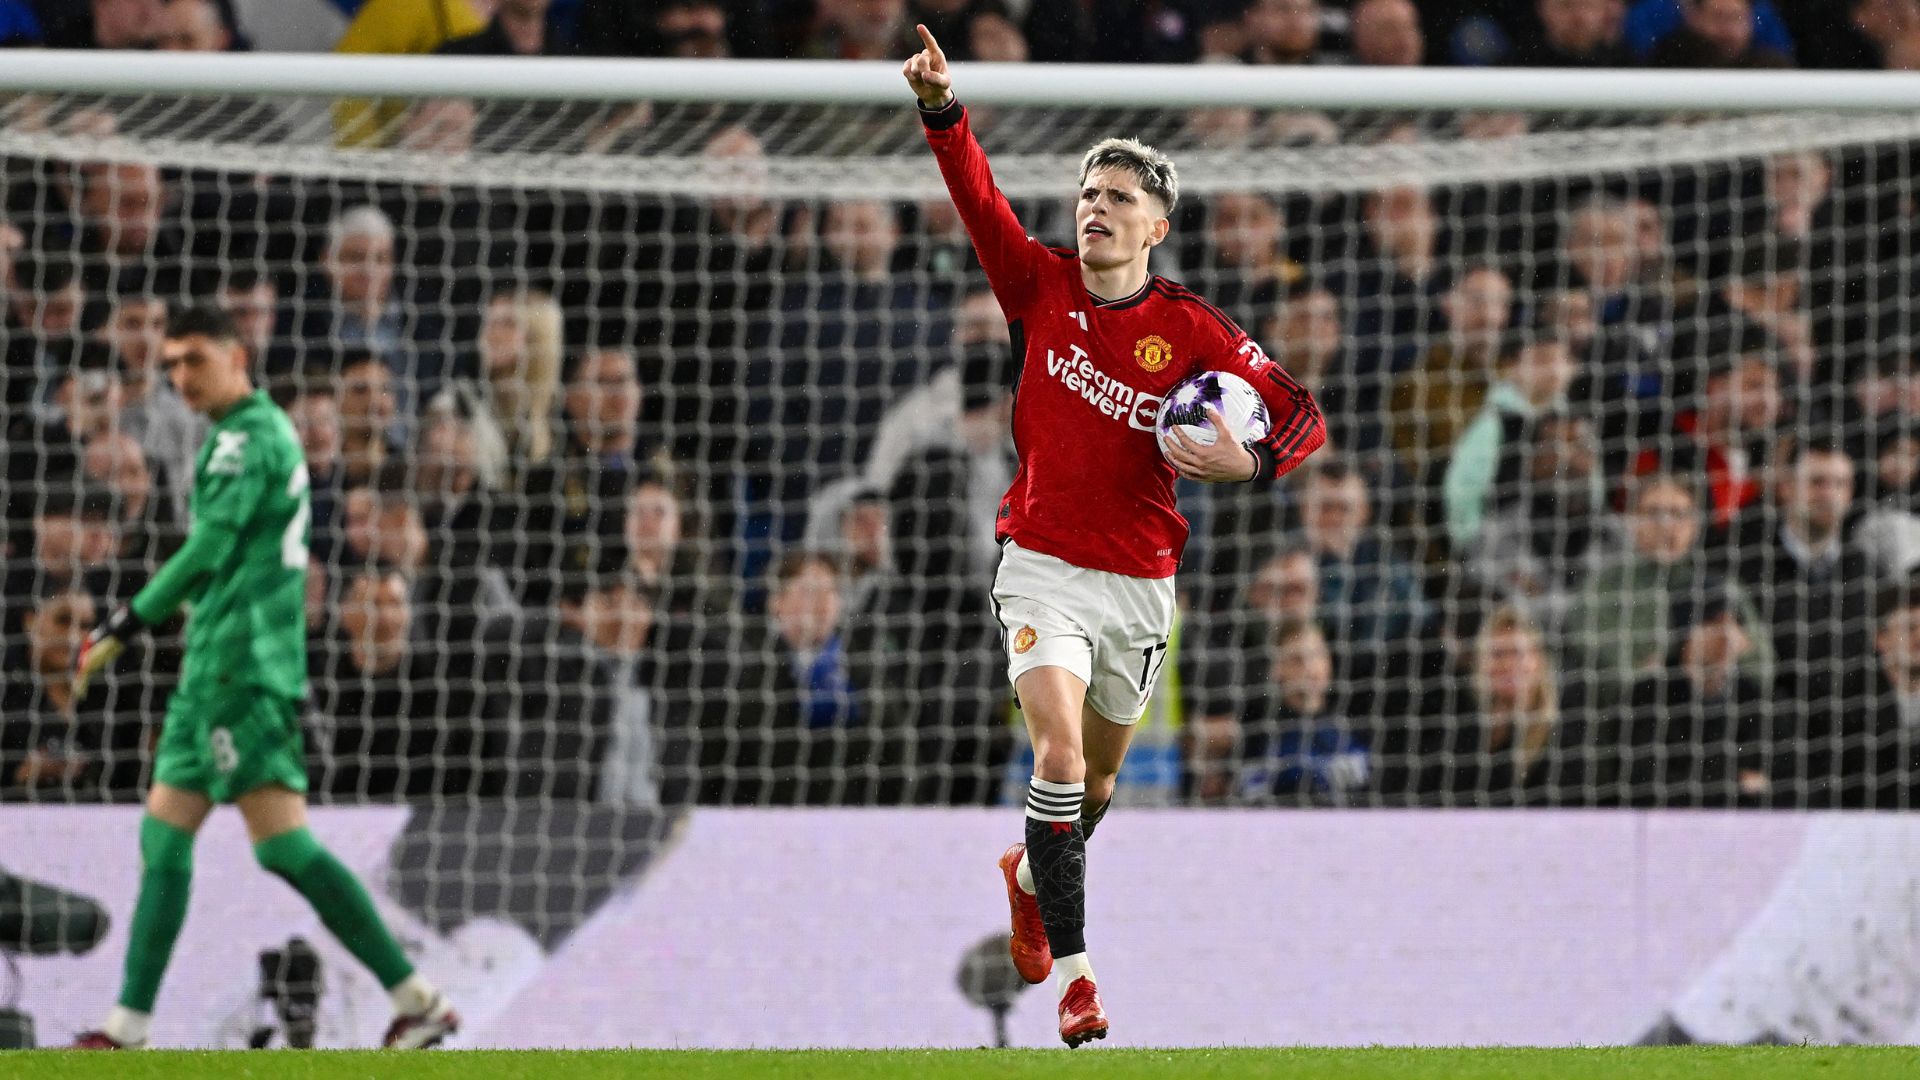 Garnacho comemorando gol marcado pelo Manchester United contra o Chelsea (Crédito: Getty Images)